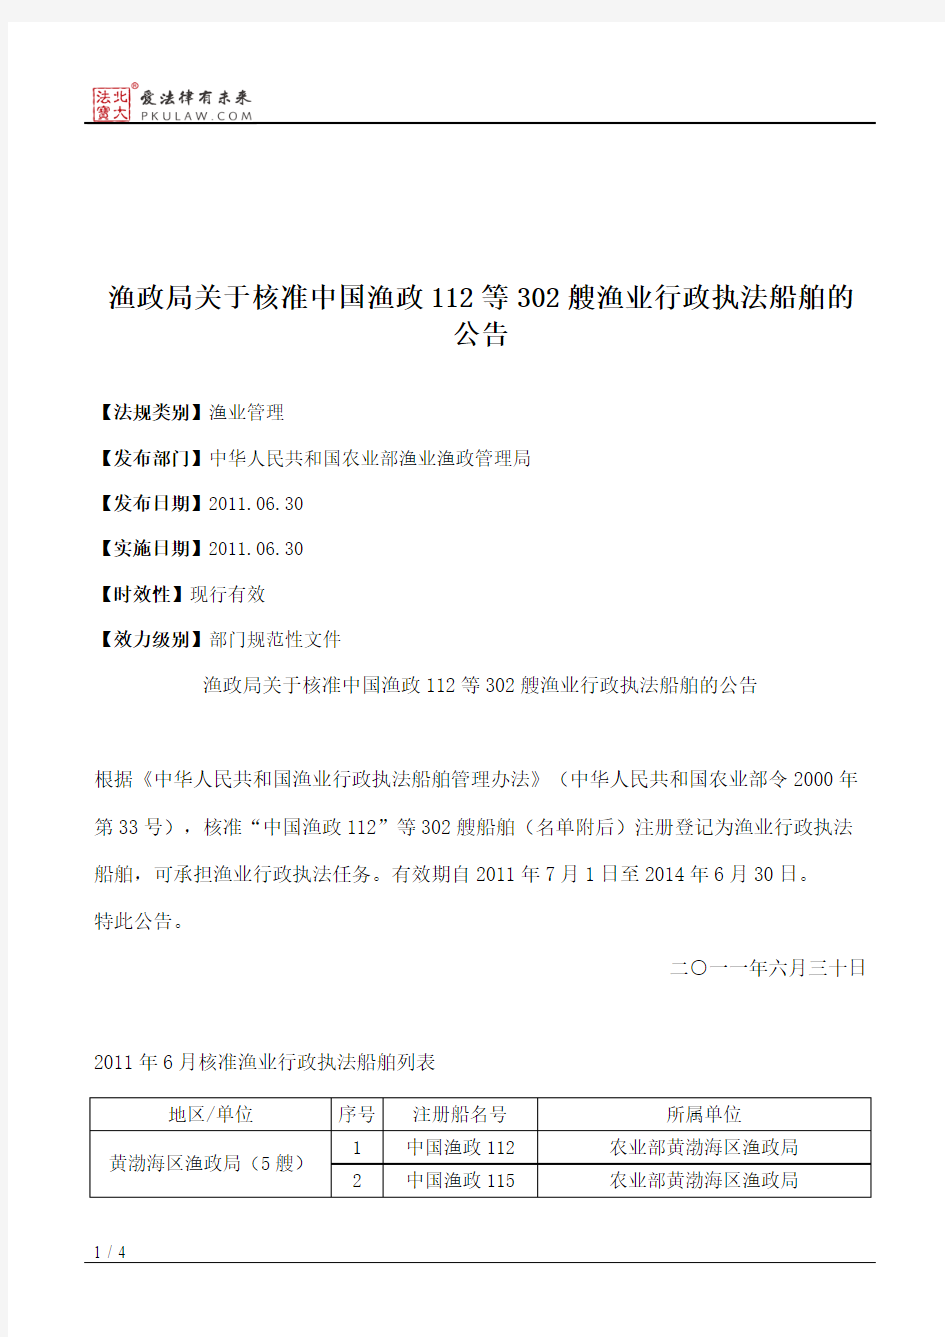 渔政局关于核准中国渔政112等302艘渔业行政执法船舶的公告